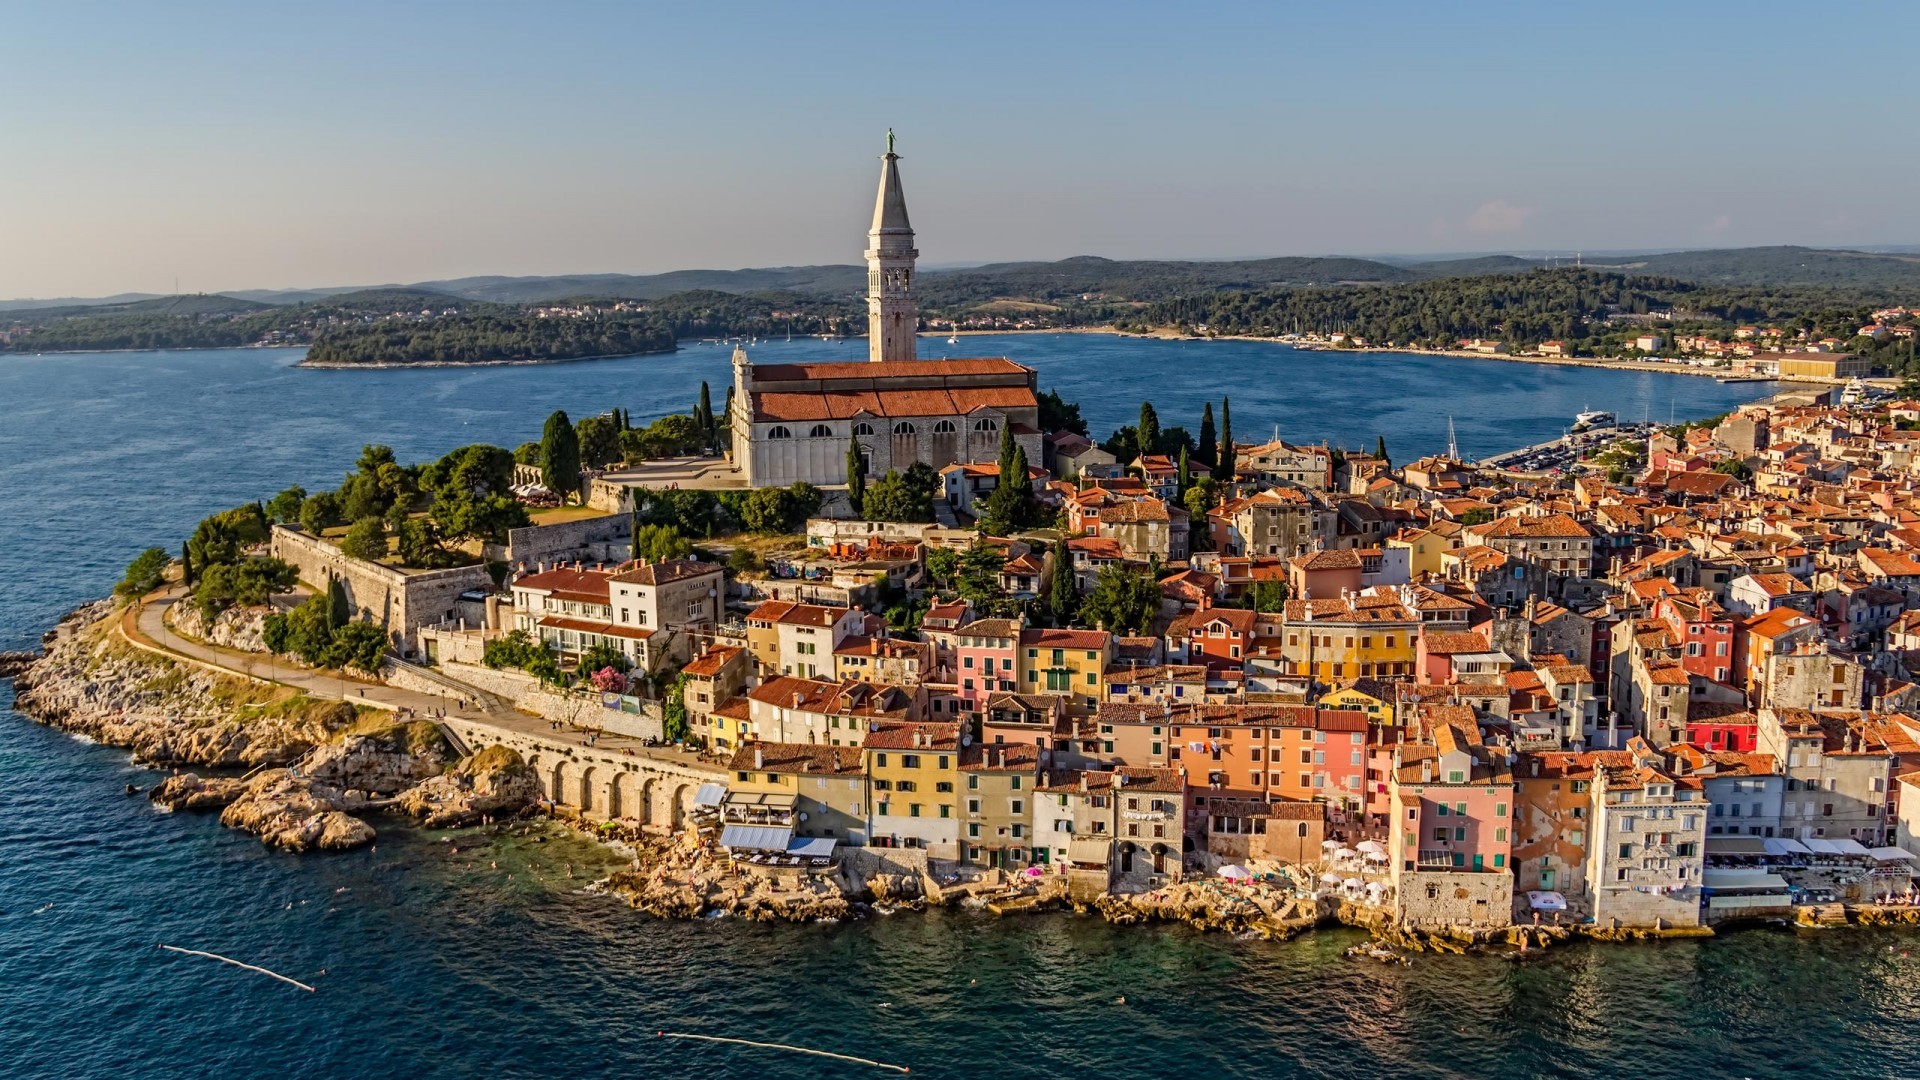 Rovinj, Croatia, City, Cityscape, Sea, Building, Architecture, Tower, Church Wallpaper